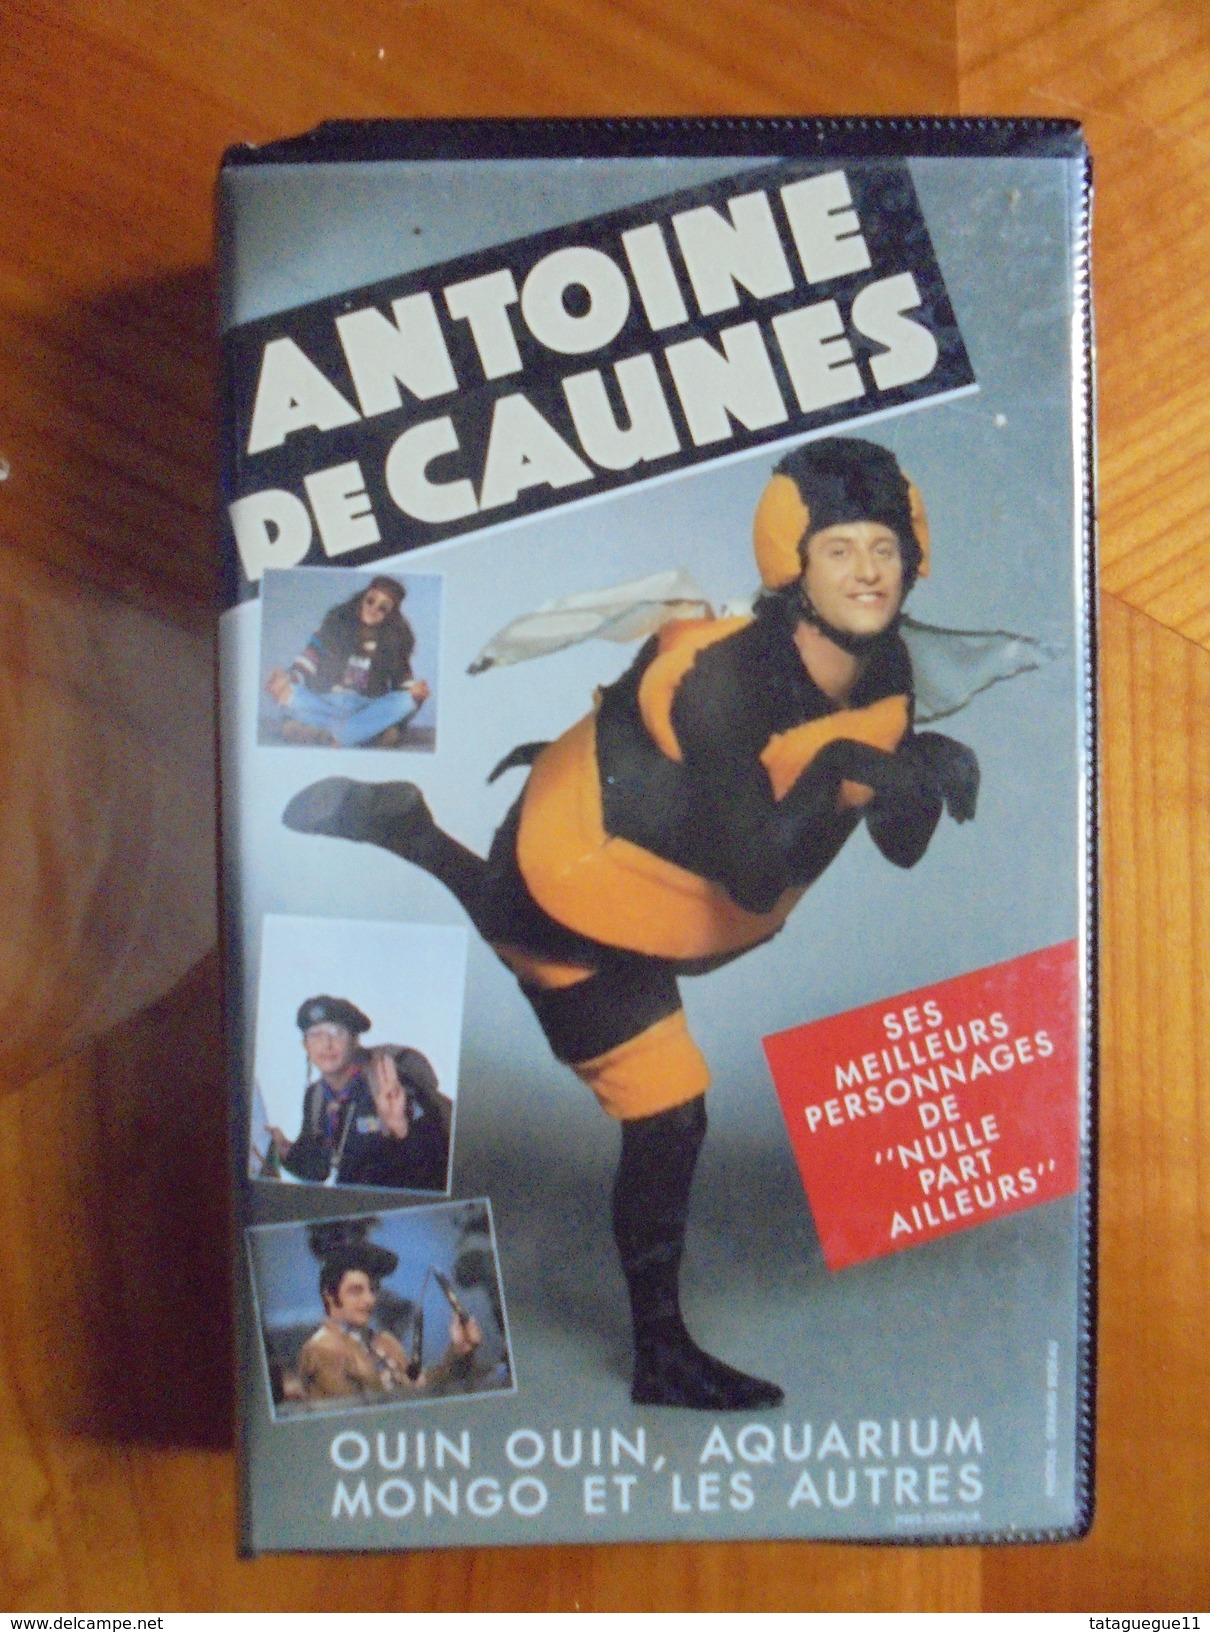 Ancien - Cassette Vidéo ANTOINE DE CAUNES "Nulle Part Ailleurs" 1992 - Series Y Programas De TV